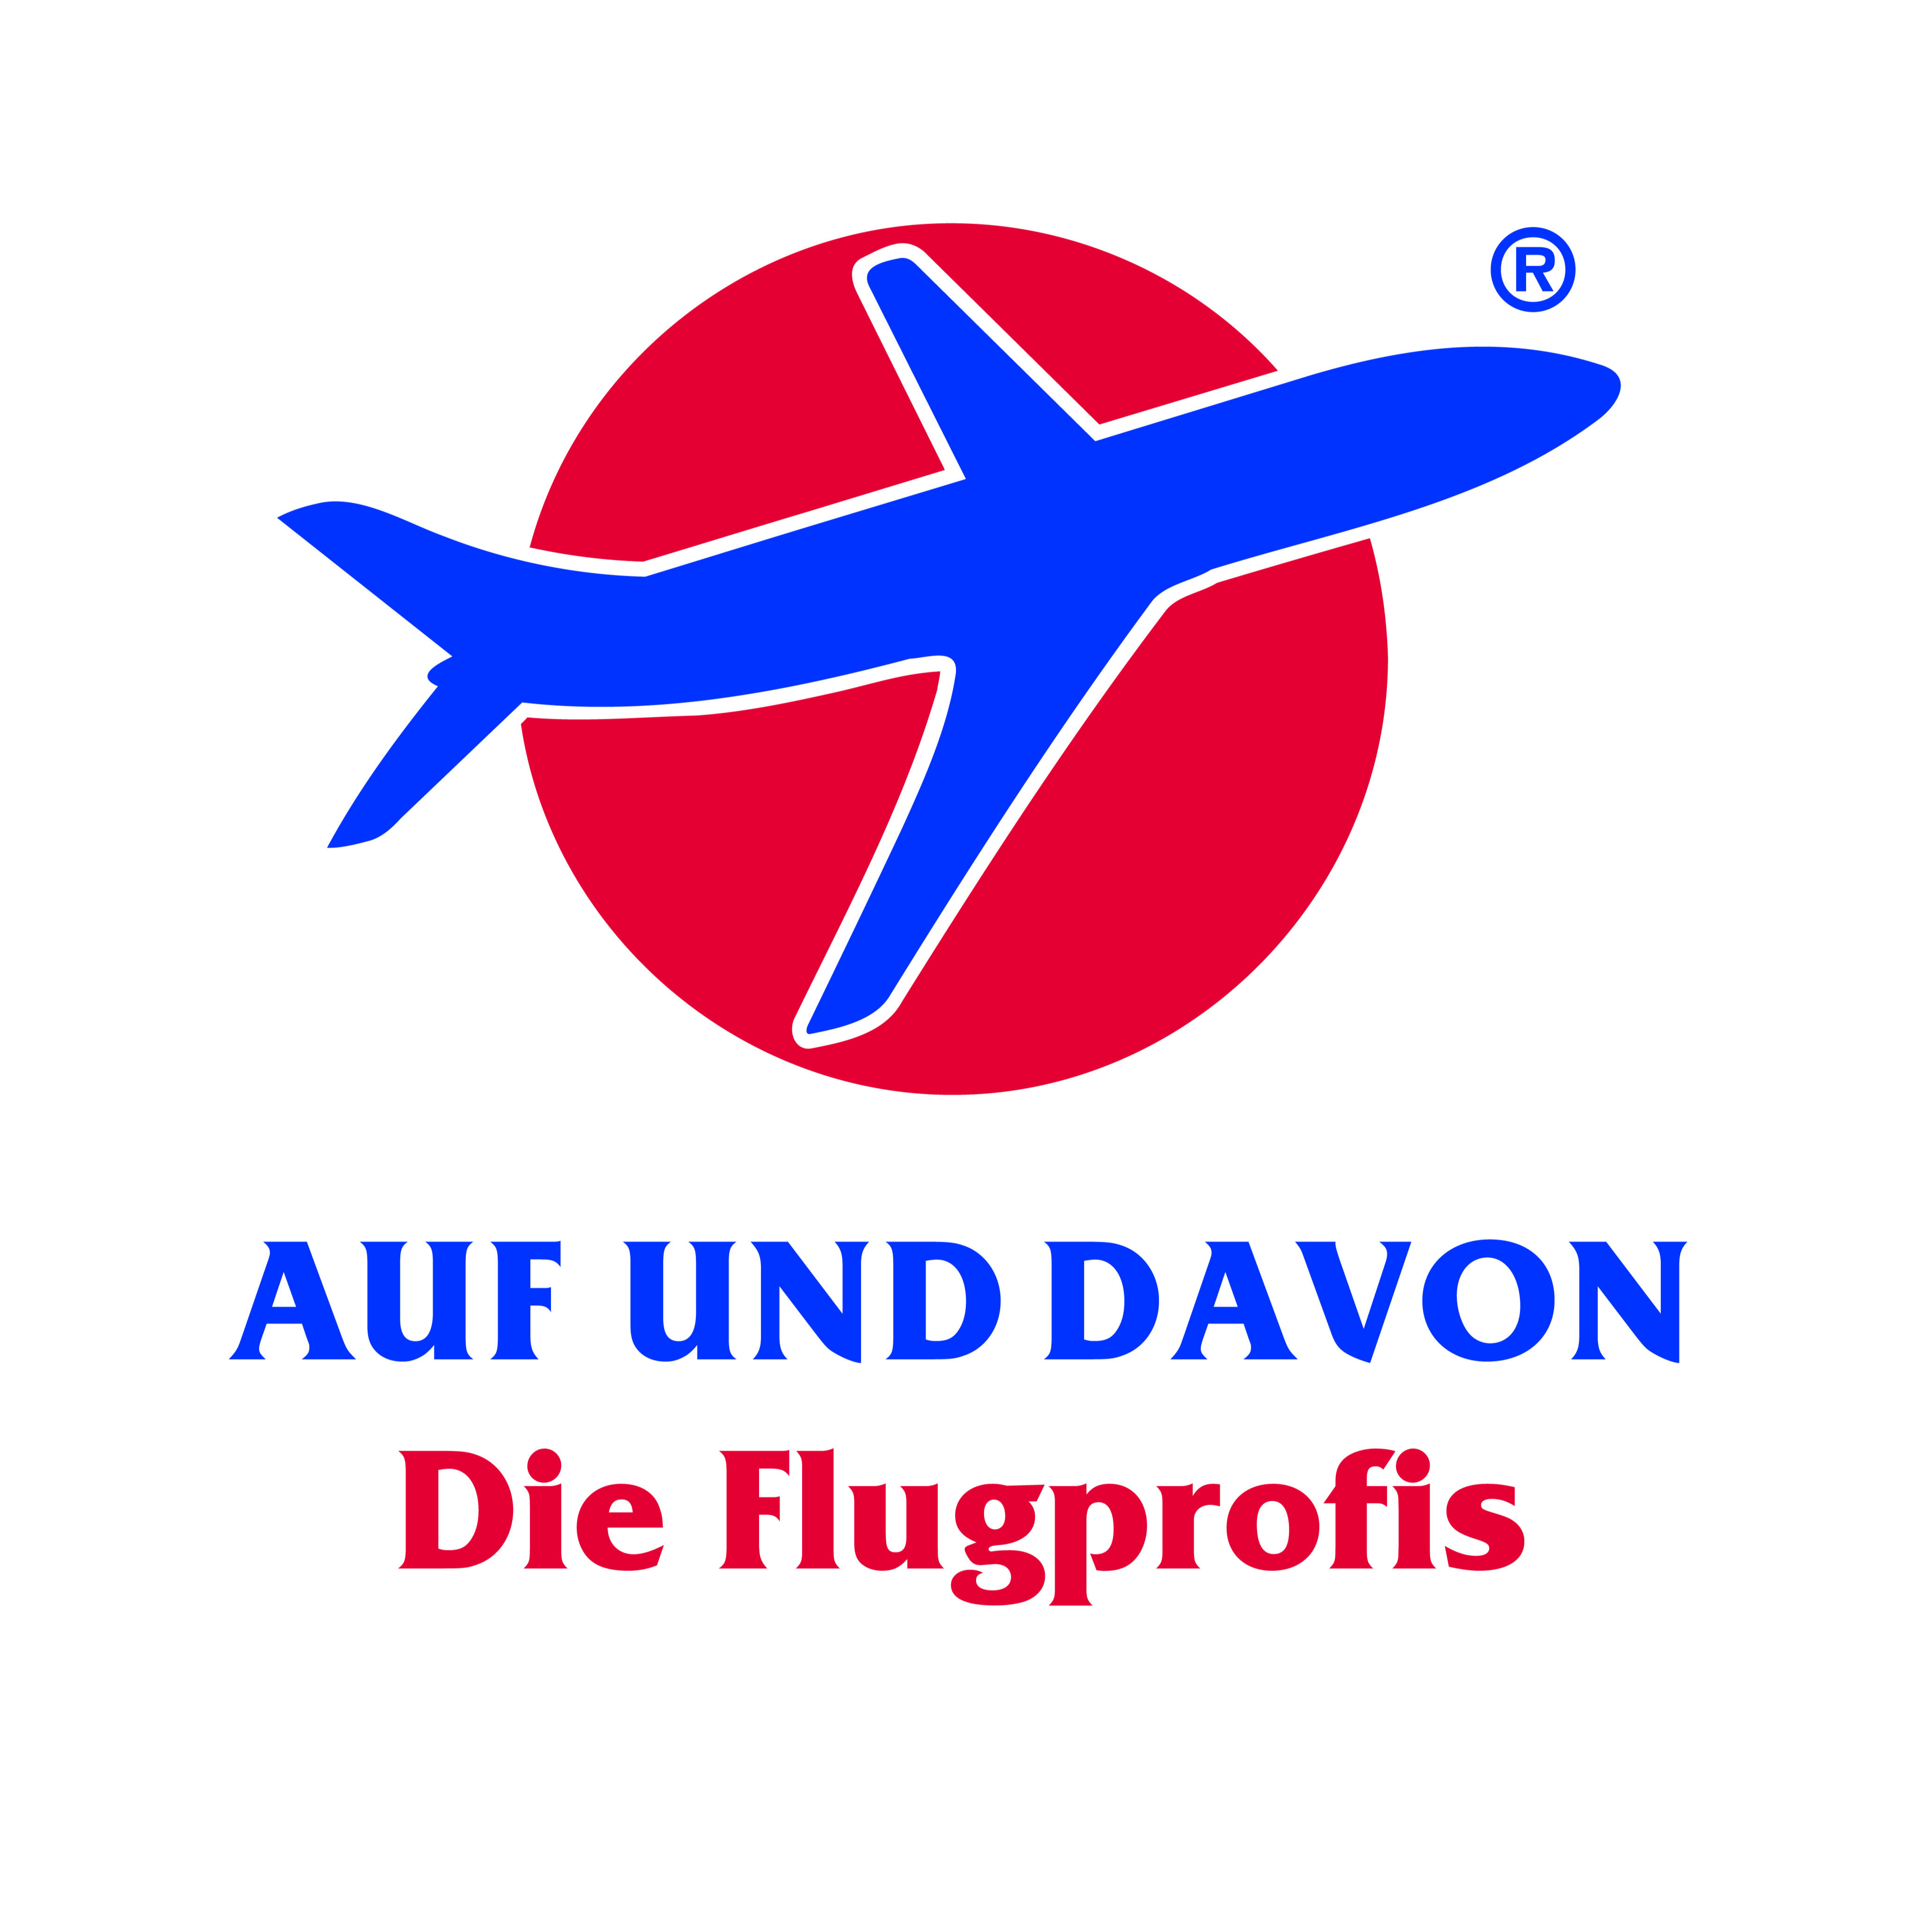 Logo AUF UND DAVON - Die Flugprofis